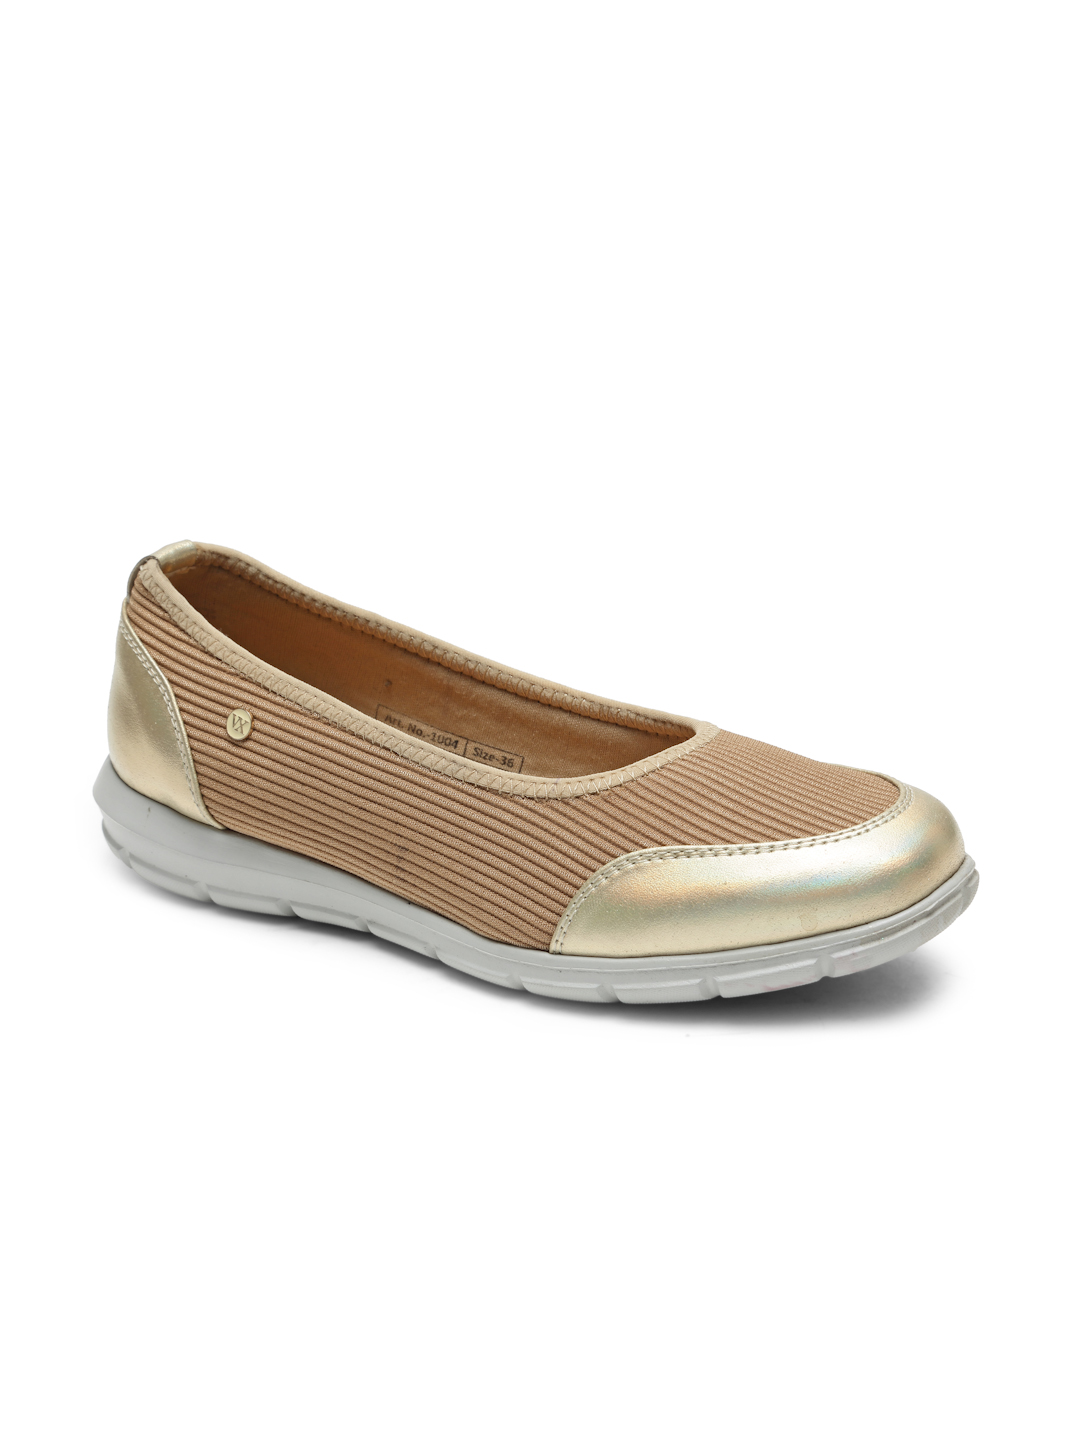 Buy Von Wellx Germany Comfort Women's Beige Casual Shoes Alice Online in Salalah